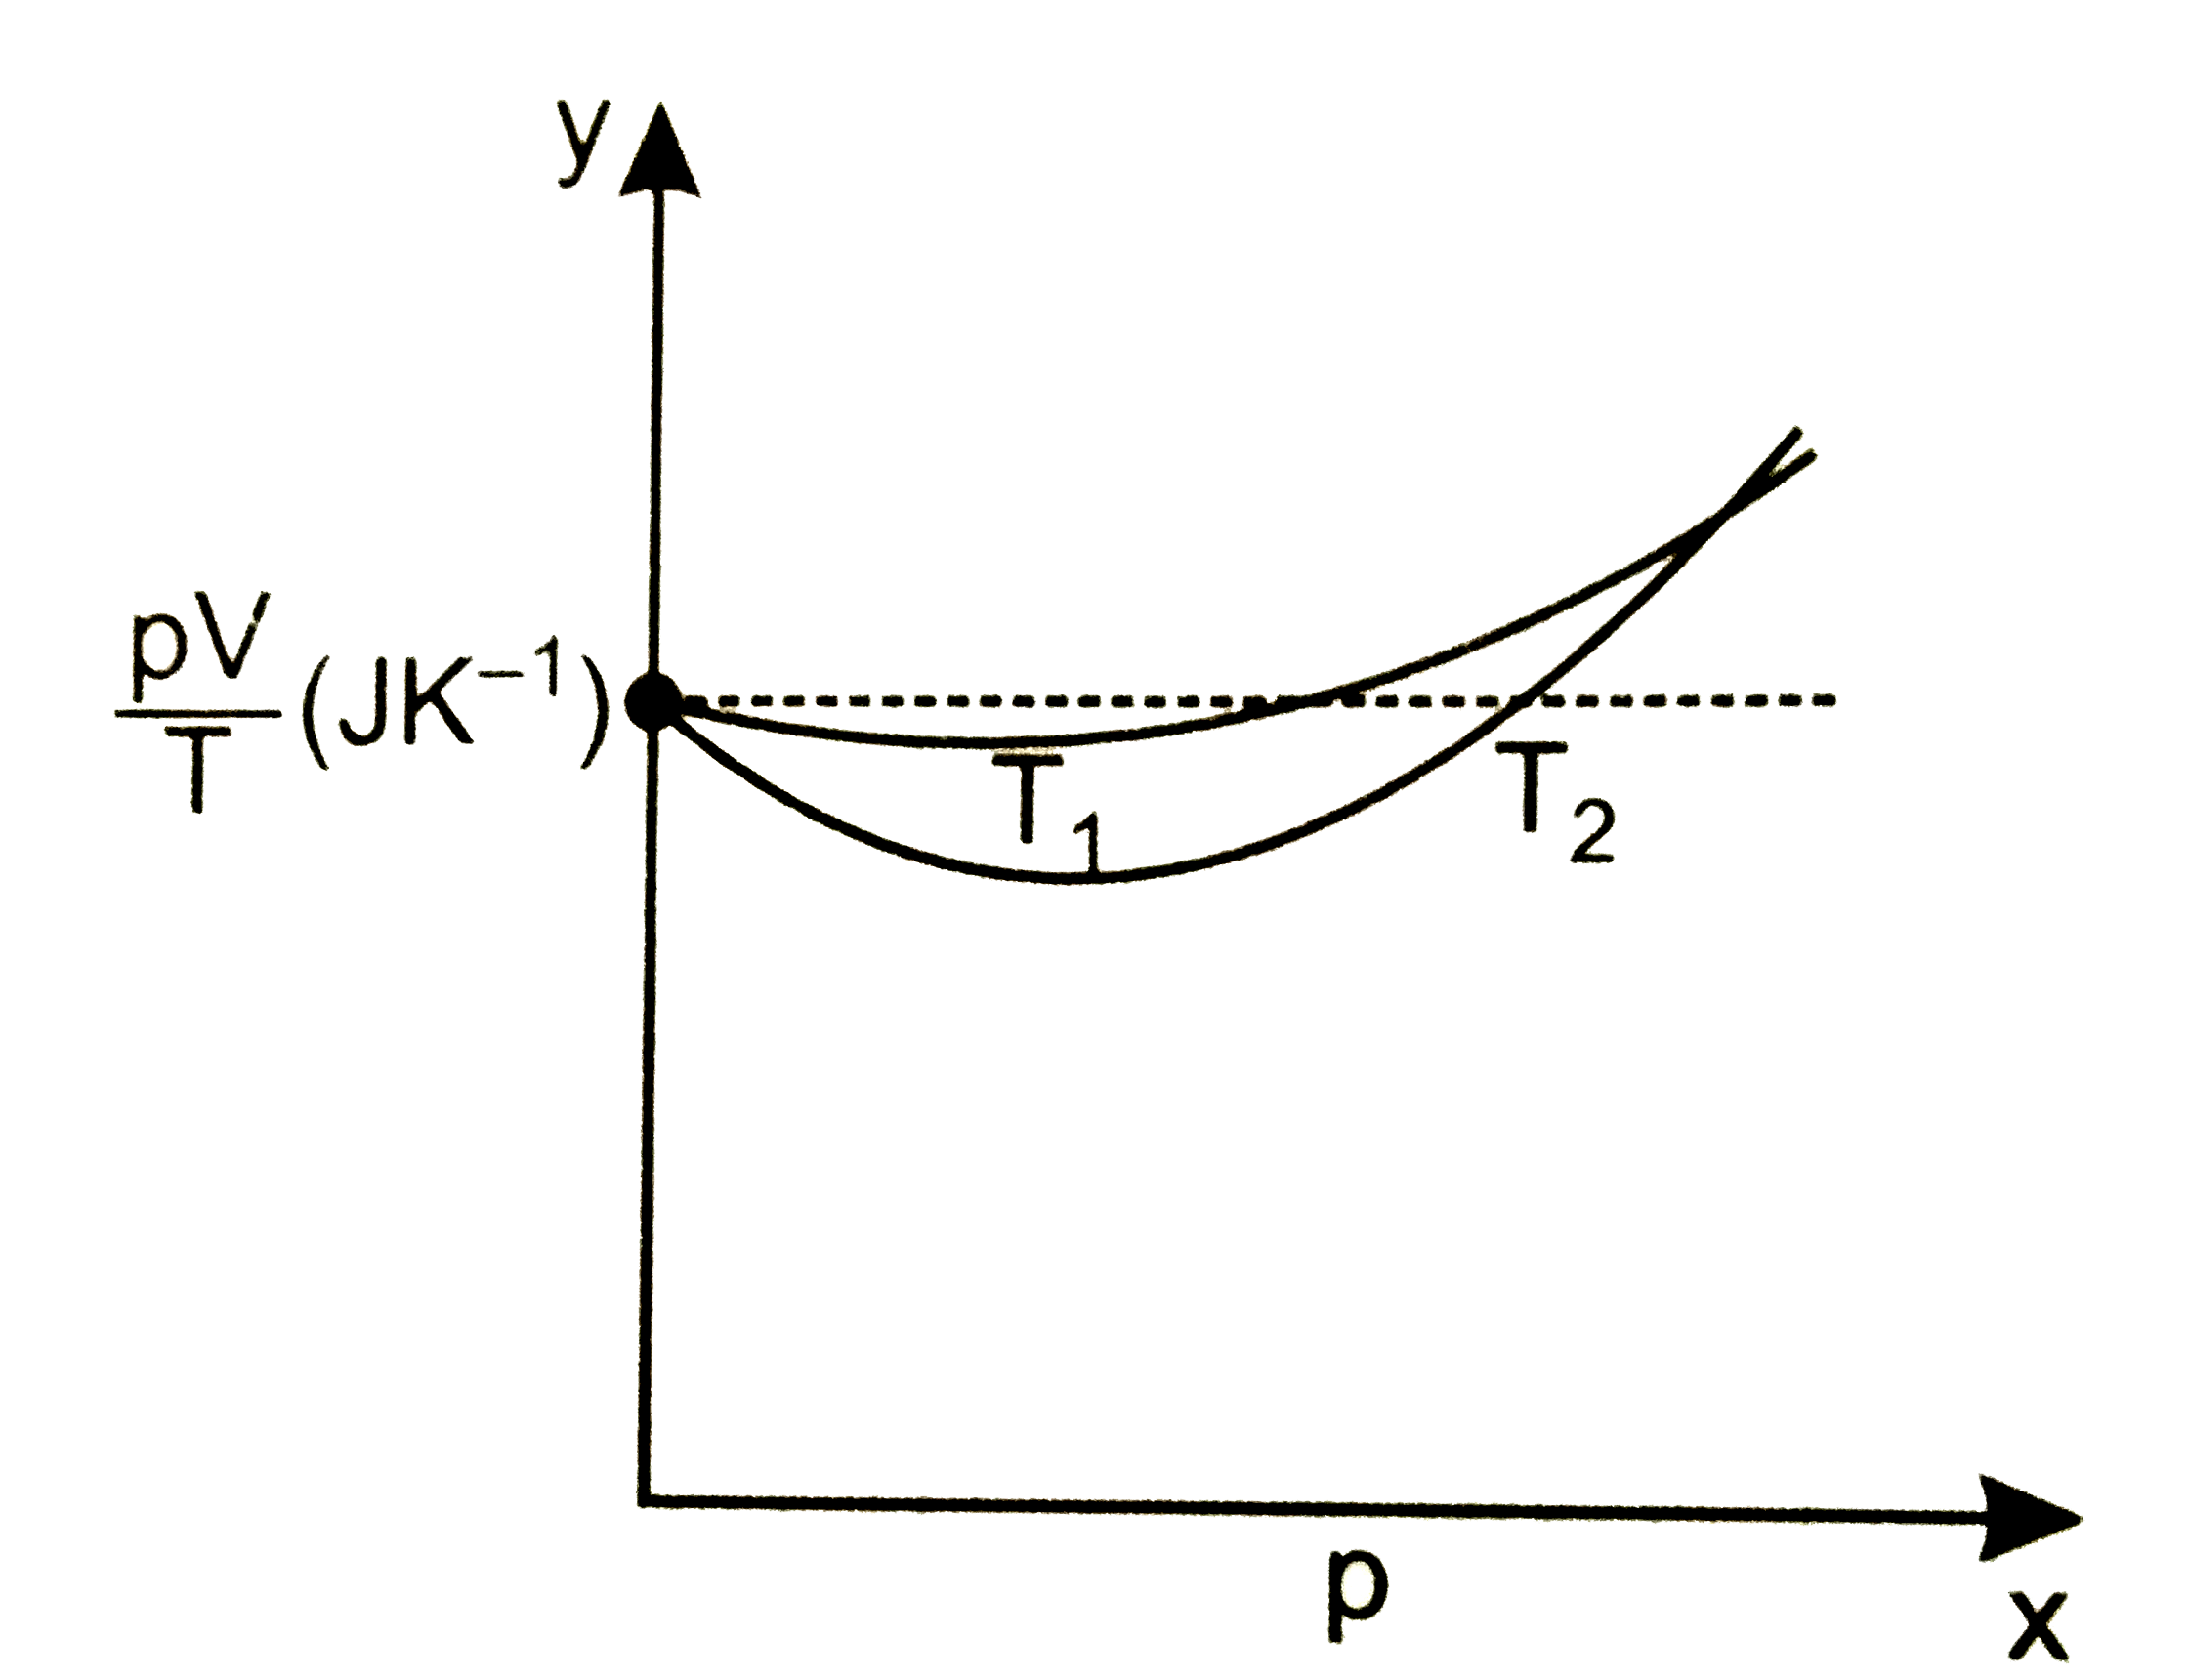 चित्र में ऑक्सीजन के 1.00xx10^(-3) किग्रा द्रव्यमान के लिए pV//T एवं p में दो अलग-अलग तापों पर प्राफ दर्शायें गये हैं      (i) बिंदुकित रेखा क्या दर्शाती है?   (ii) क्या सत्य है T(1)gtT(2) अथवा T(1)ltT(2)?   (iii) y अक्ष पर जहां वक्र मिलते हैं वहां pV//T का मान क्या है?   (iv) यदि हम ऐसे ही ग्राफ 1.00xx10^(-3) किग्रा हाइड्रोजन के लिए बनायें तो भी क्या उस बिंदु पर जहां वक्र y- अक्ष से मिलते हैं pV//T का मान यही होगा? यदि नहीं तो हाइड्रोजन के कितने द्रव्यमान के लिए pV//T का मान (कम दाब और उच्च ताप के क्षेत्र के लिए) वही होगा? H(2) का अणु द्रव्यमान =2.02